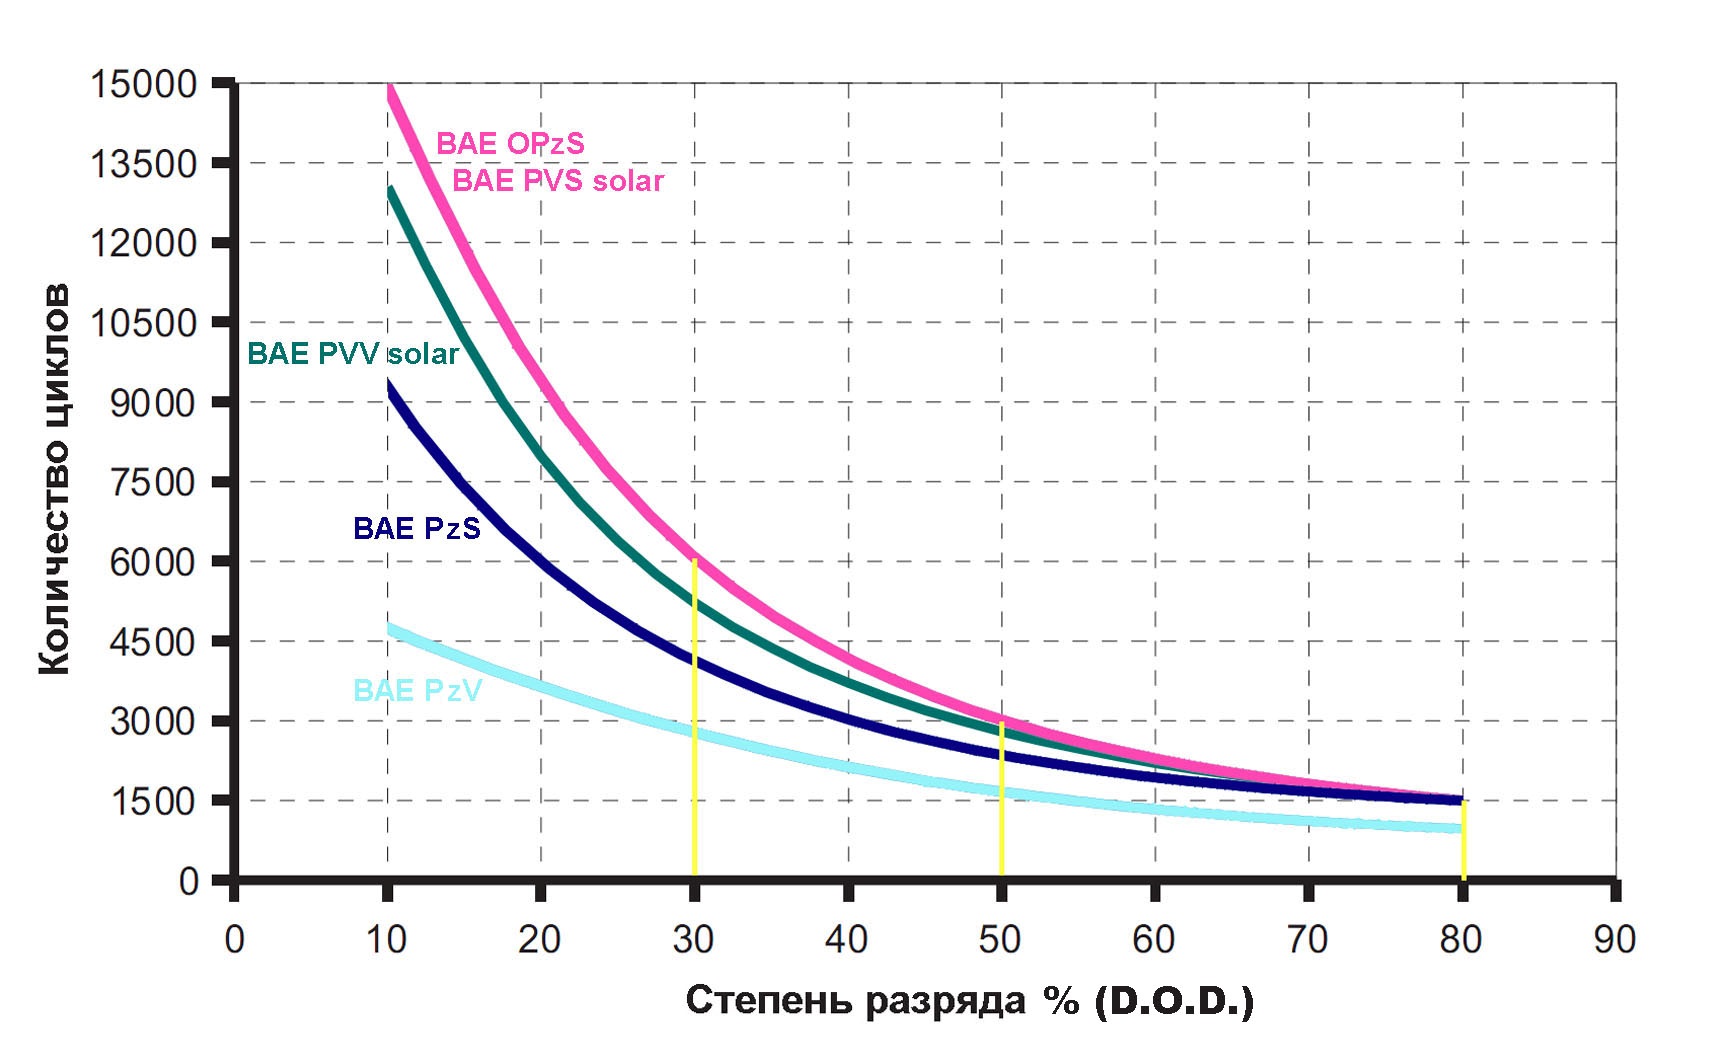 Графику аккумуляторам BAE PzS примерно соответствуют панцирные АКБ Микроарт.